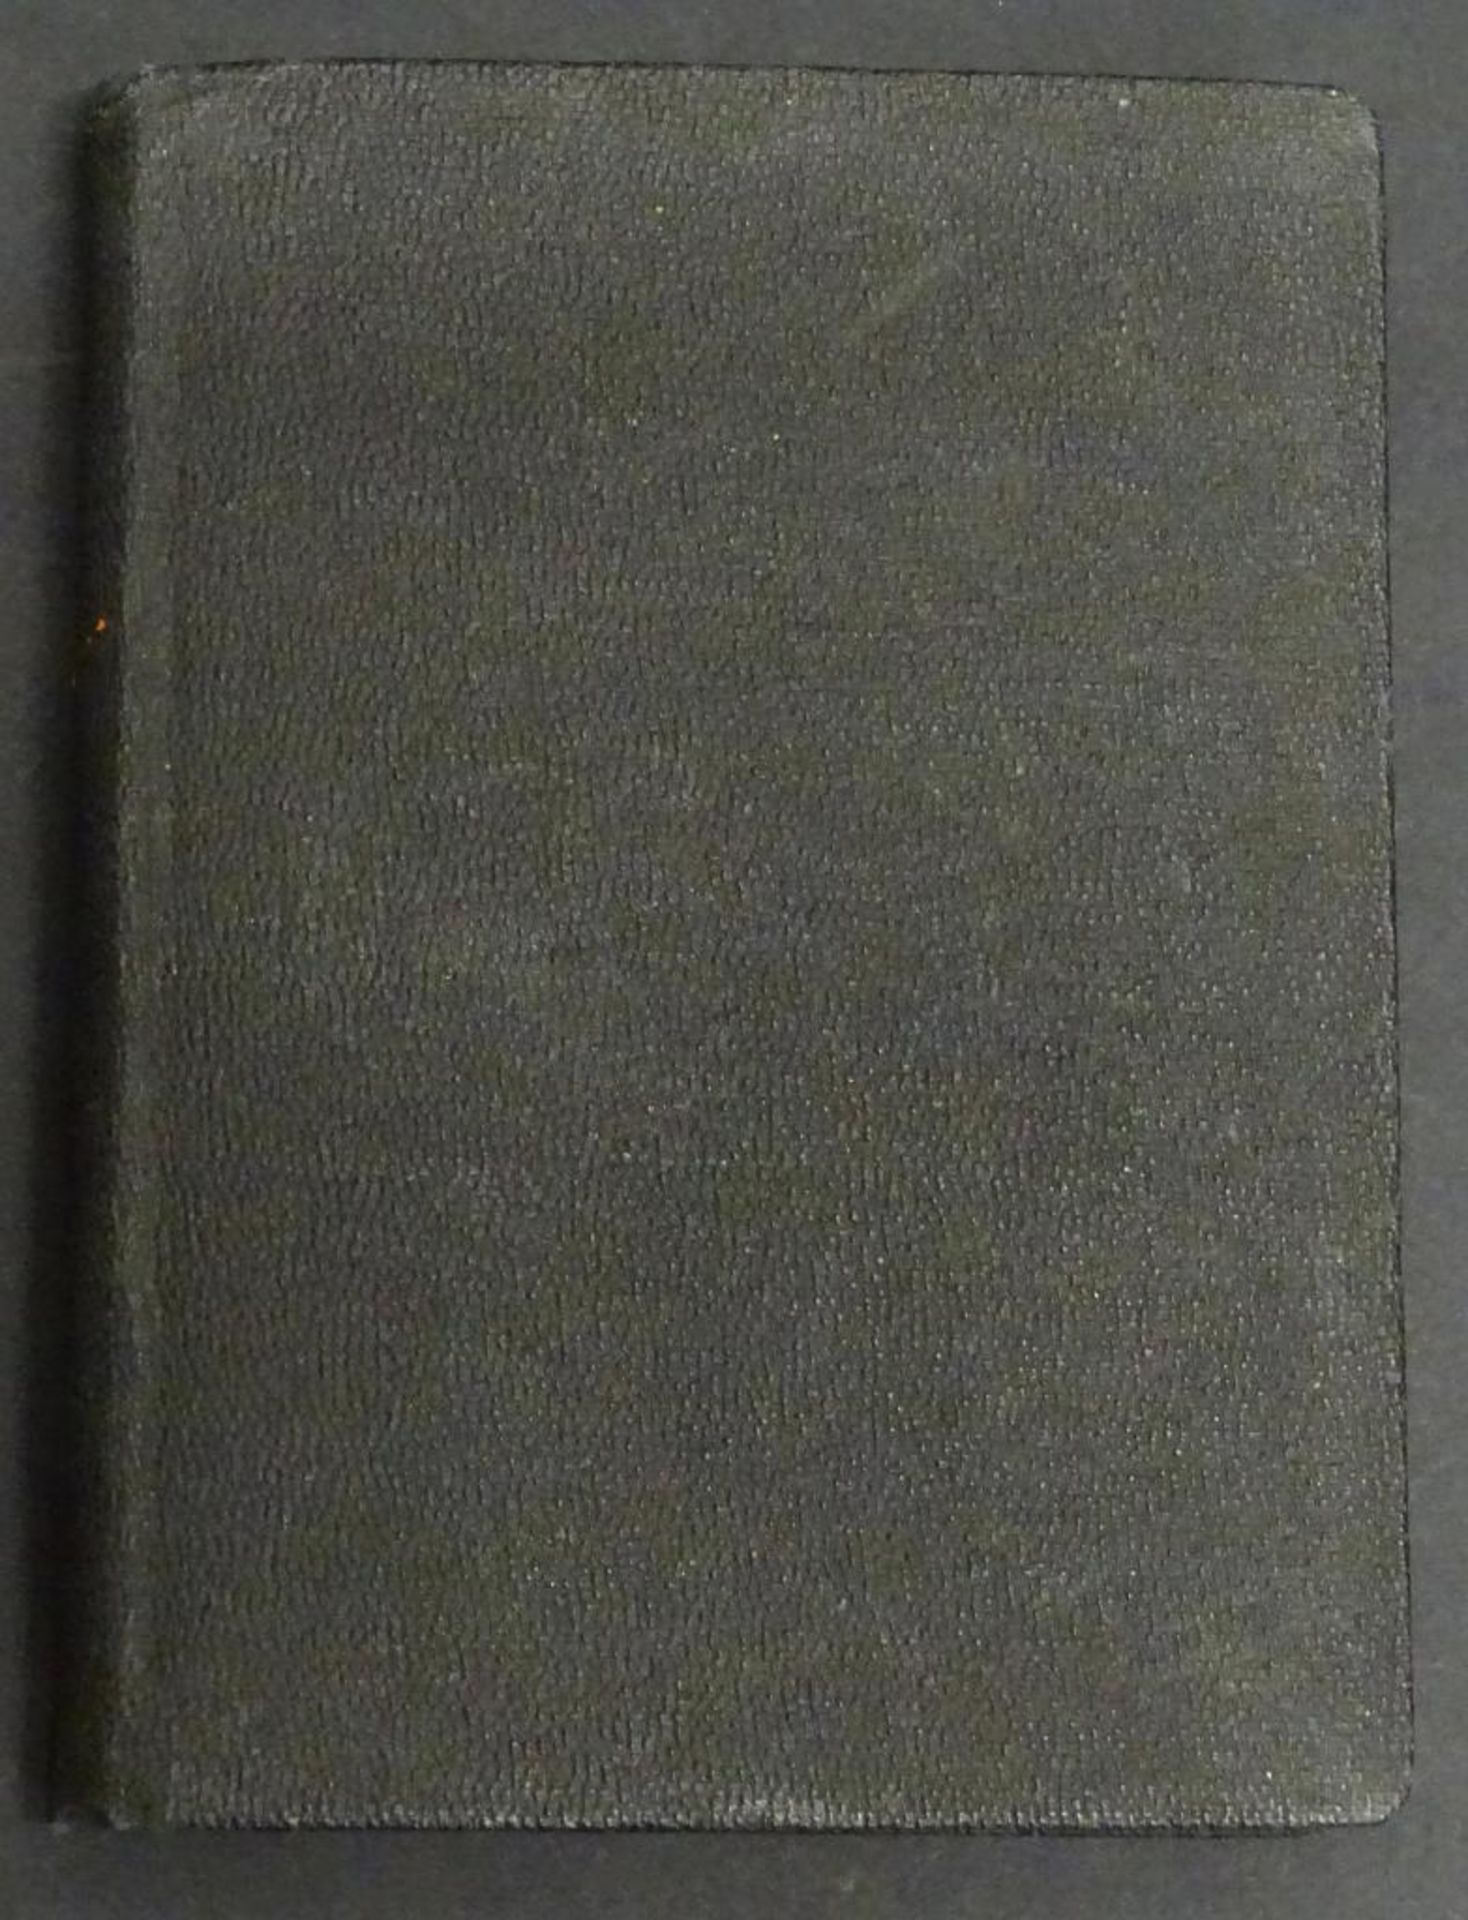 Evangelisches Militär Gesang und Gebetbuch, 1935,Deckblatt fehlt, 13x9,5c - Bild 6 aus 6